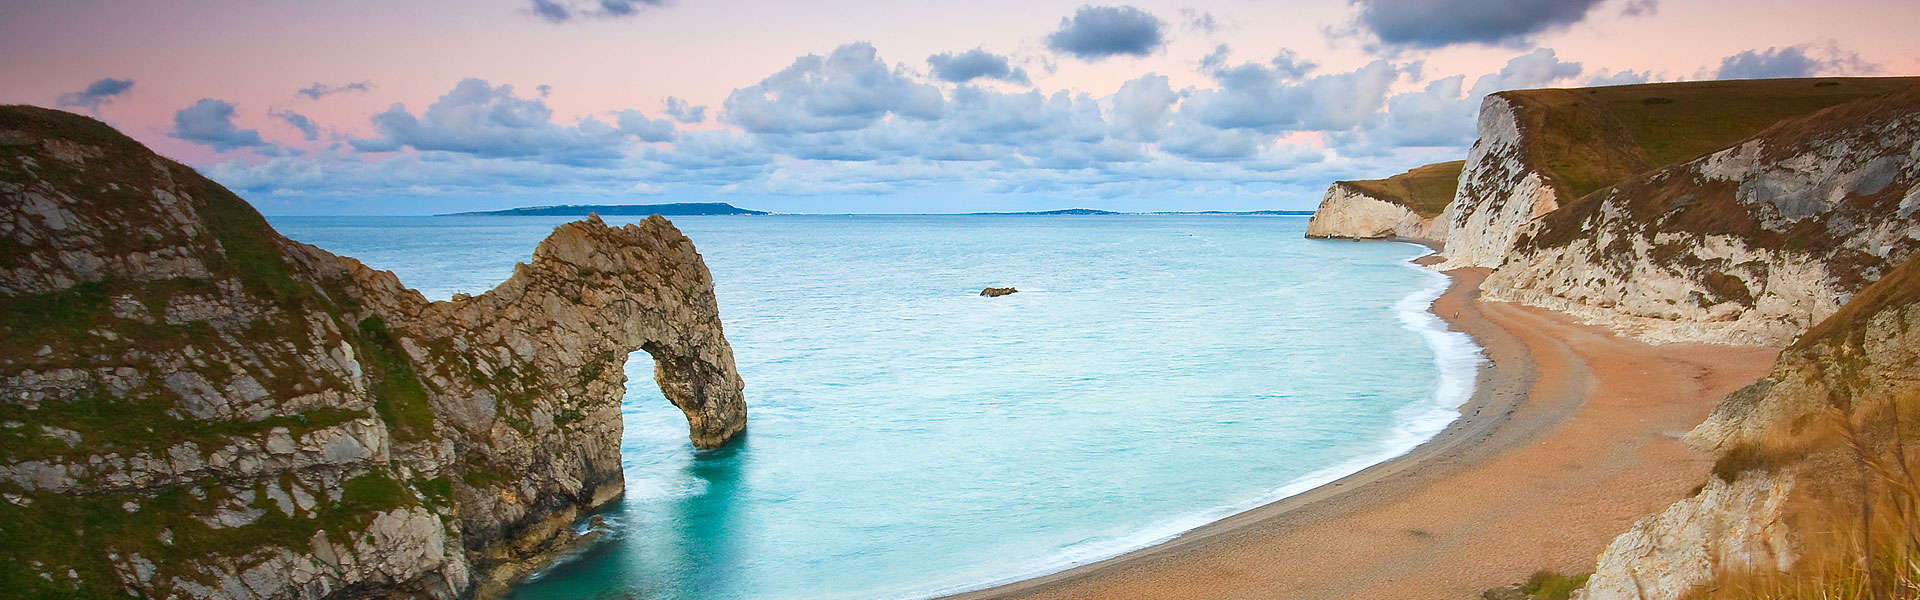 Freuen Sie sich auf ein unvergessliches Abenteuer! Travel Tipp Dorset an der britischen Küste